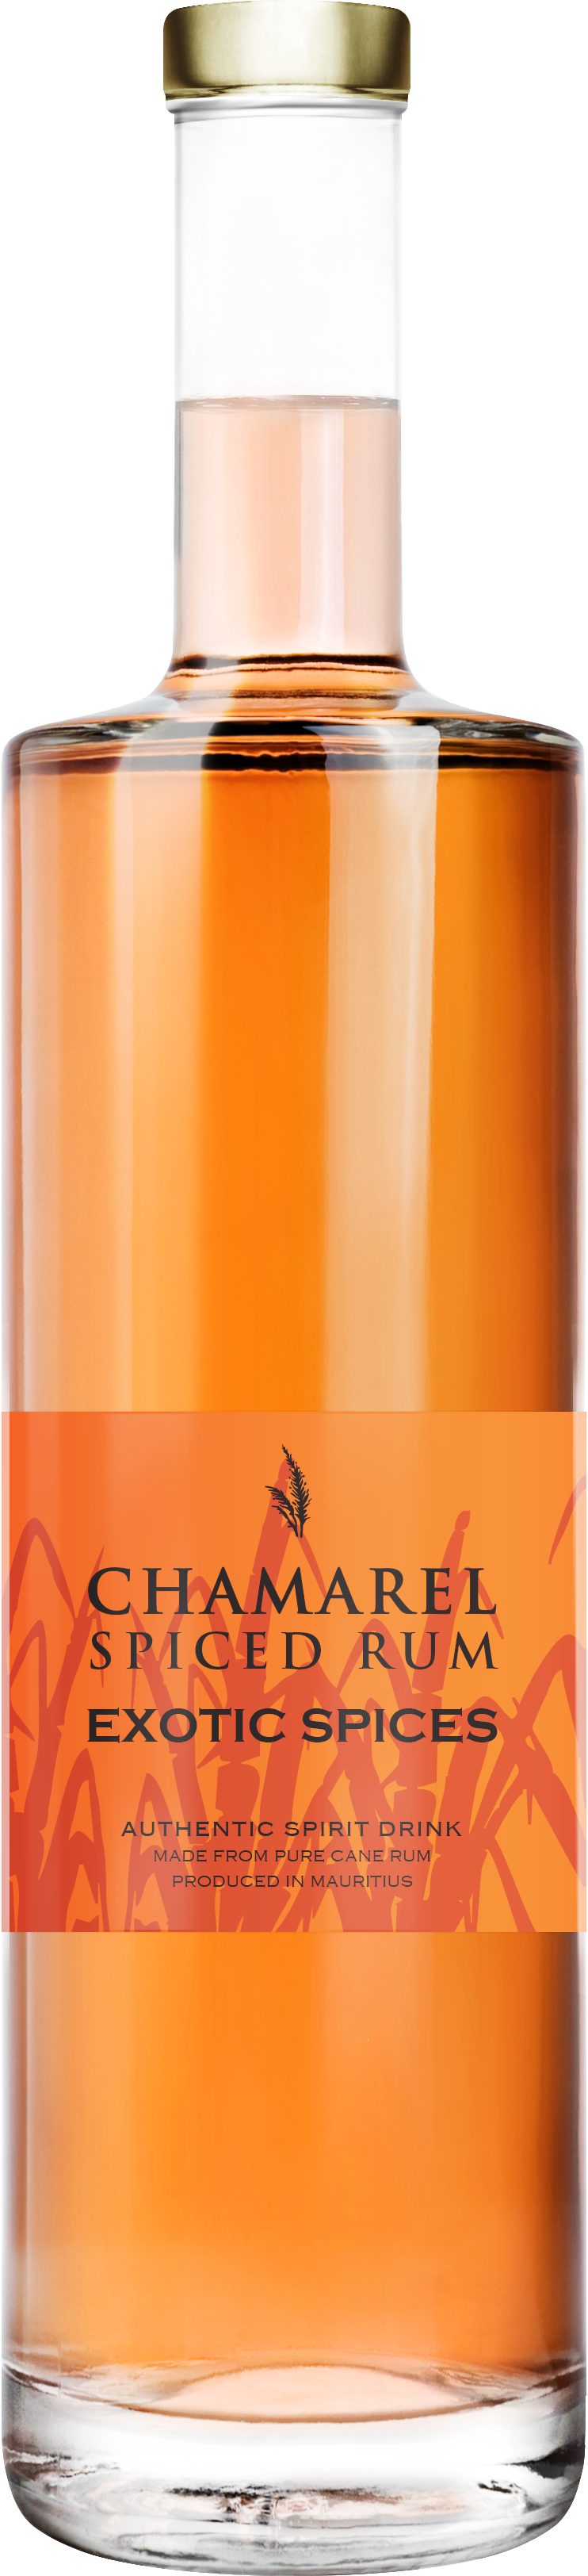 Chamarel Exotic Spices Premium Rum 70cl